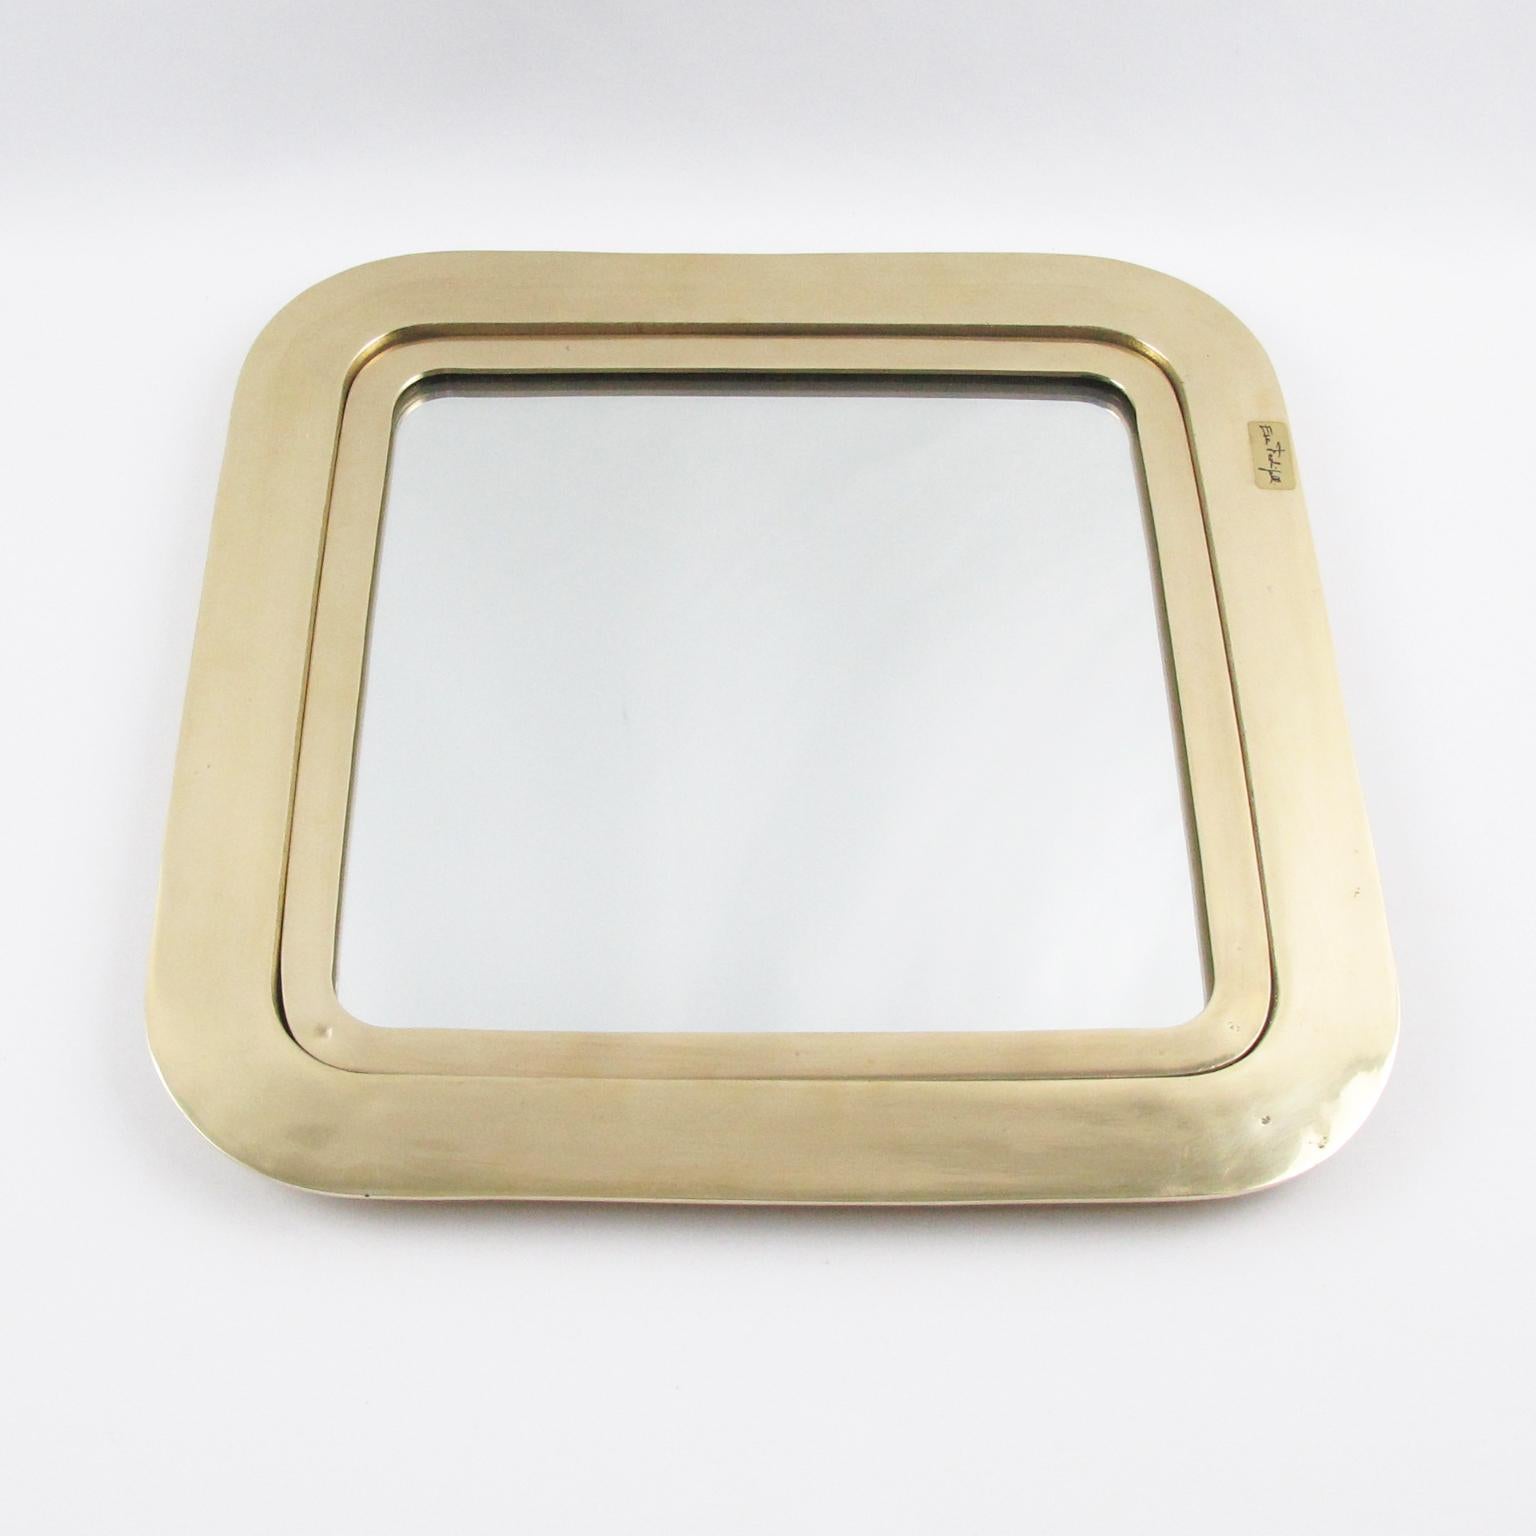 L'artiste italien Esa Fedrigolli a créé cet impressionnant plateau, plat ou vide poche en bronze doré poli. La pièce présente une forme carrée lourde avec des coins arrondis et un insert en miroir avec protection en verre. La pièce centrale est